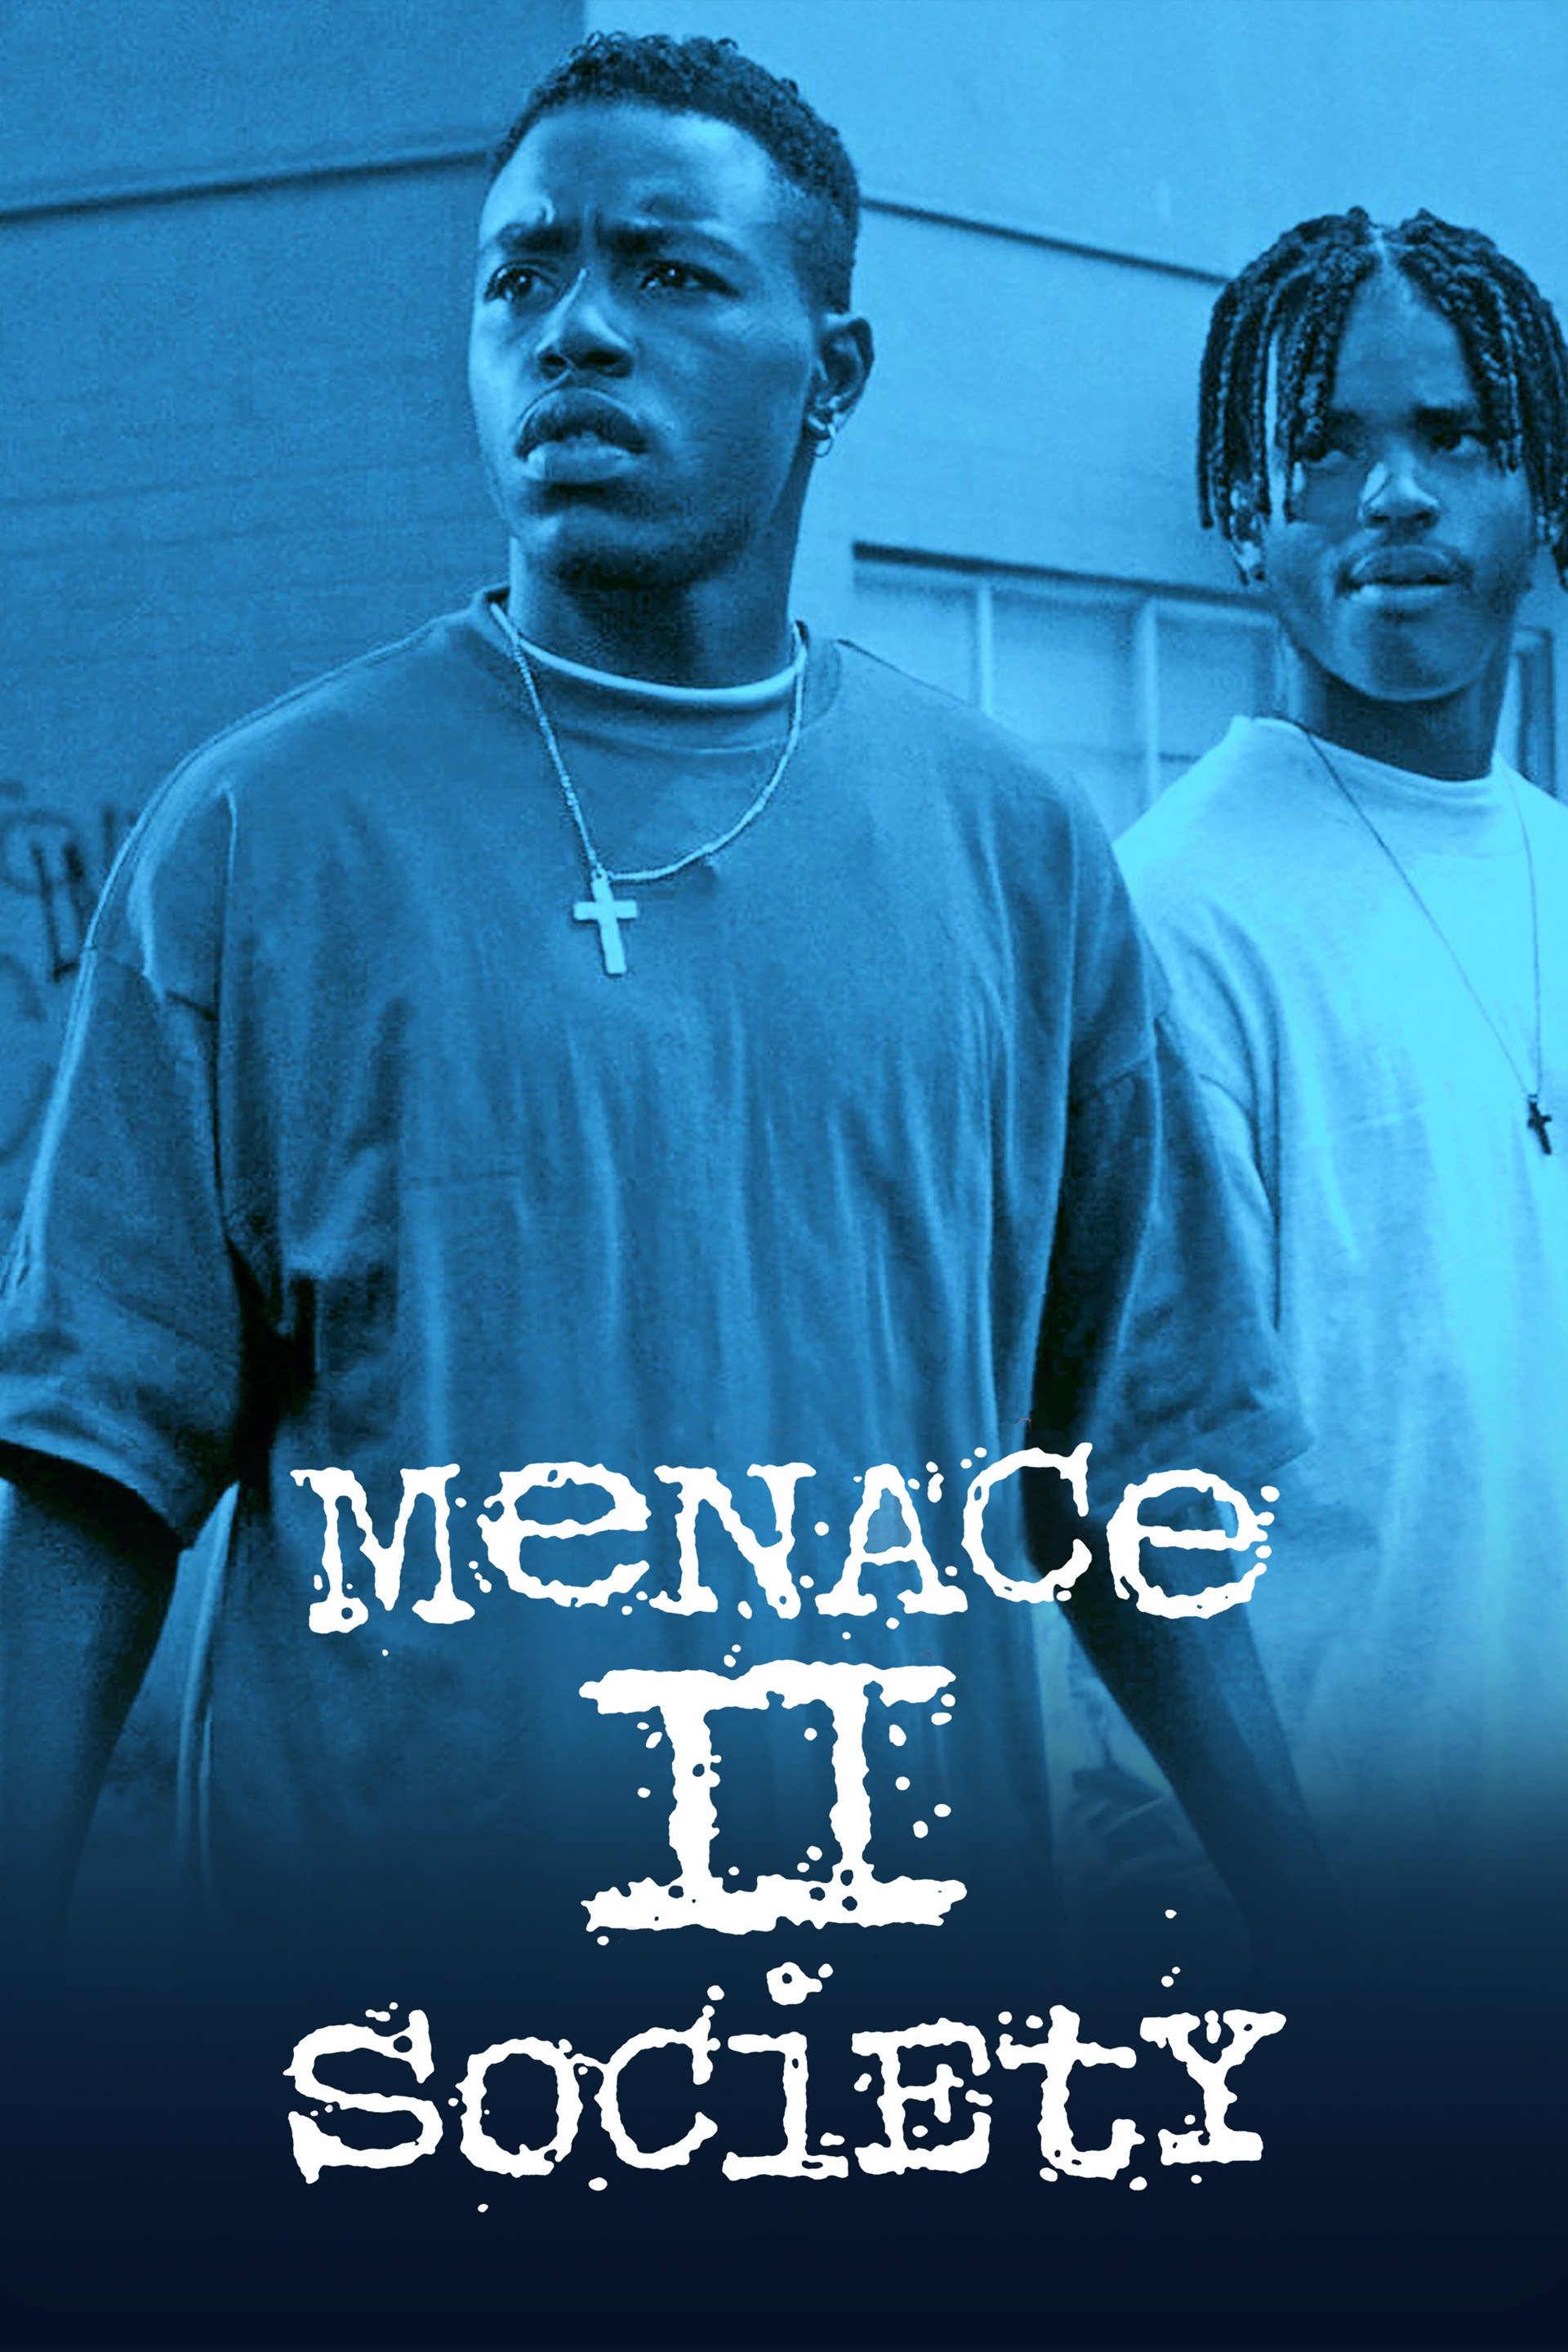 menace ii society 1993